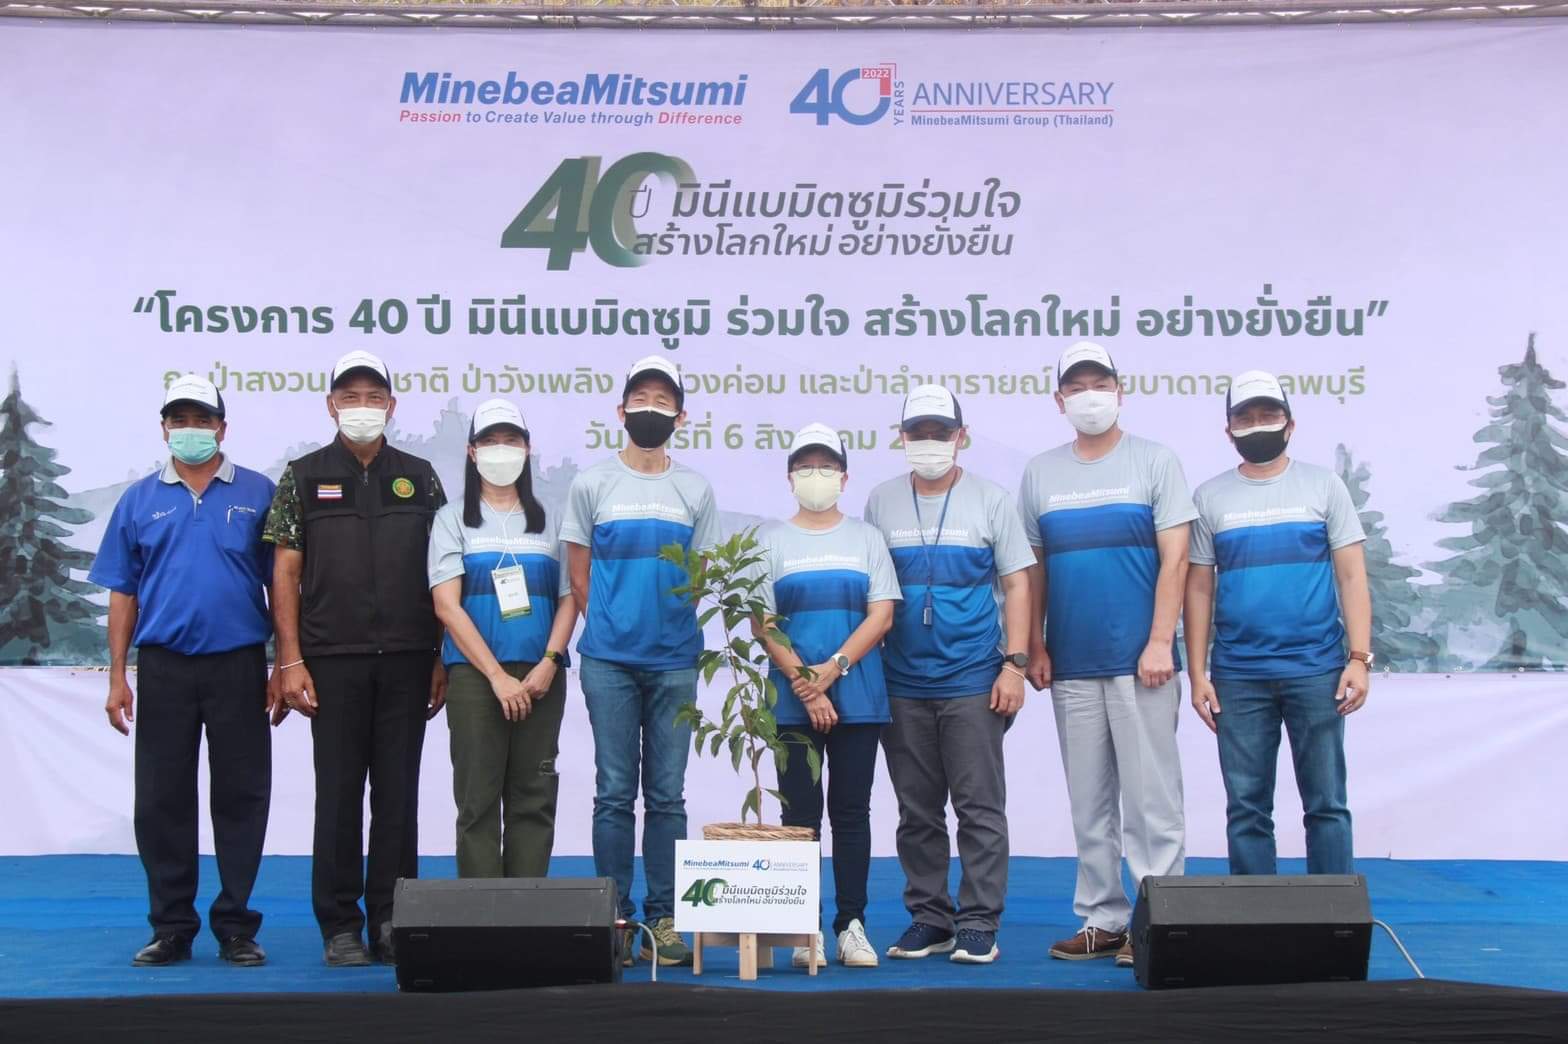 กลุ่มบริษัท มินีแบมิตซูมิ (ประเทศไทย) ร่วมกับ กรมป่าไม้ จัดกิจกรรม “40ปี มินีแบมิตซูมิ ร่วมใจ สร้างโลกใหม่ อย่างยั่งยืน”